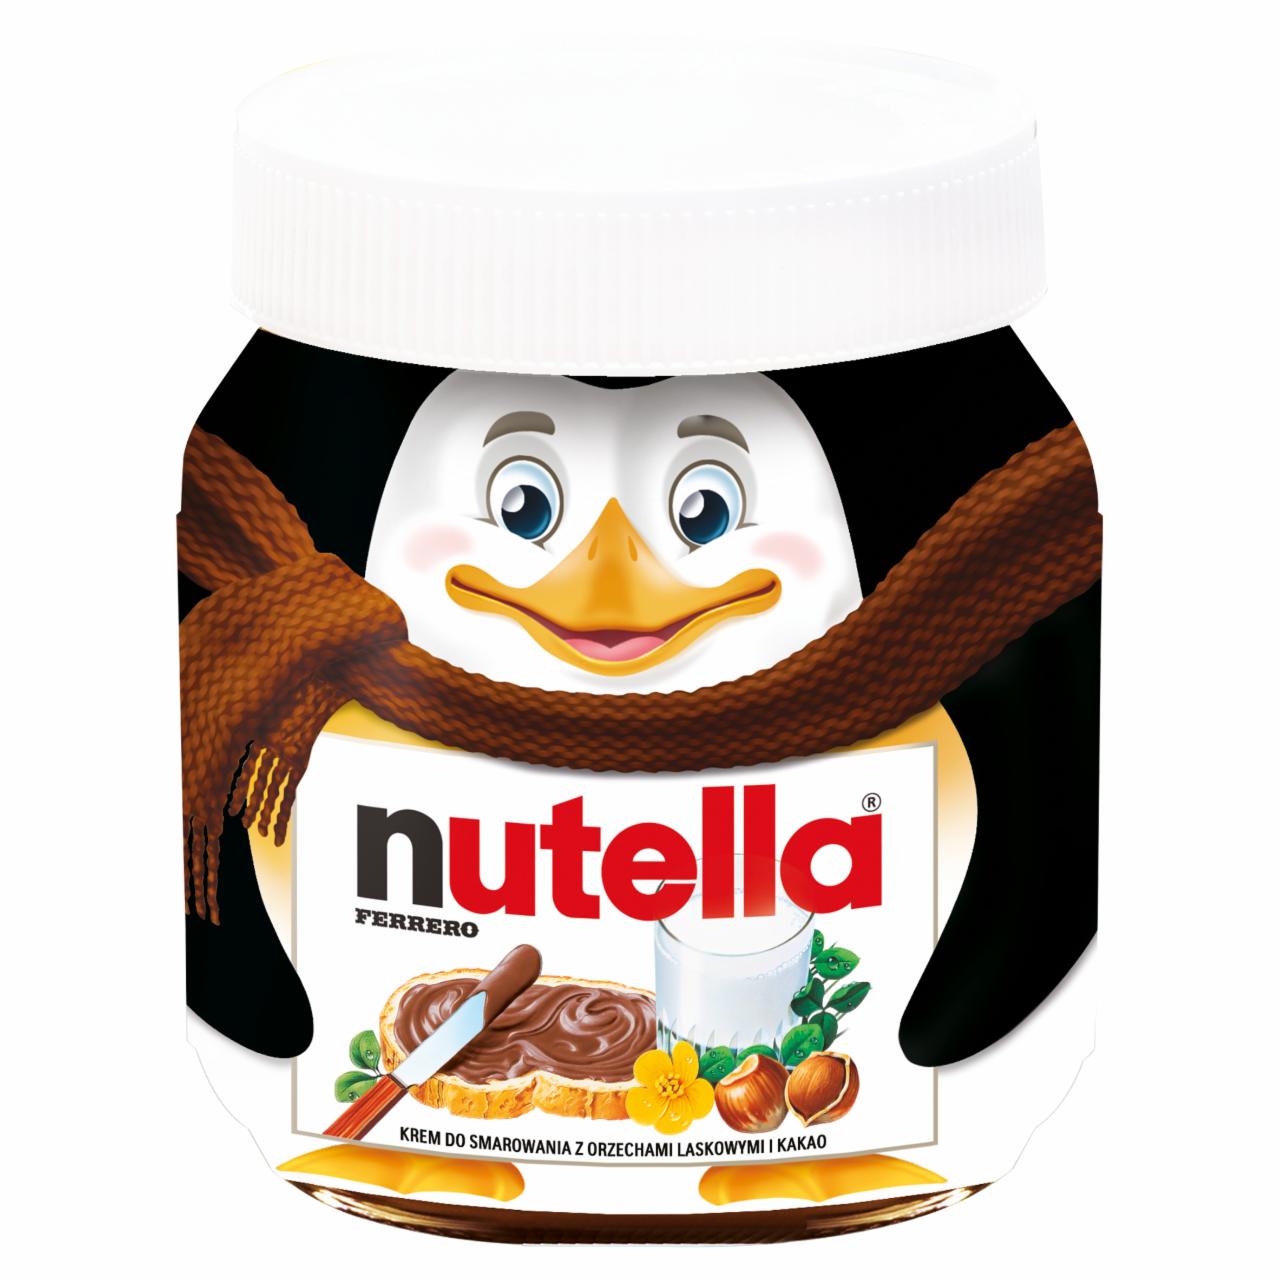 Zdjęcia - Nutella Krem do smarowania z orzechami laskowymi i kakao